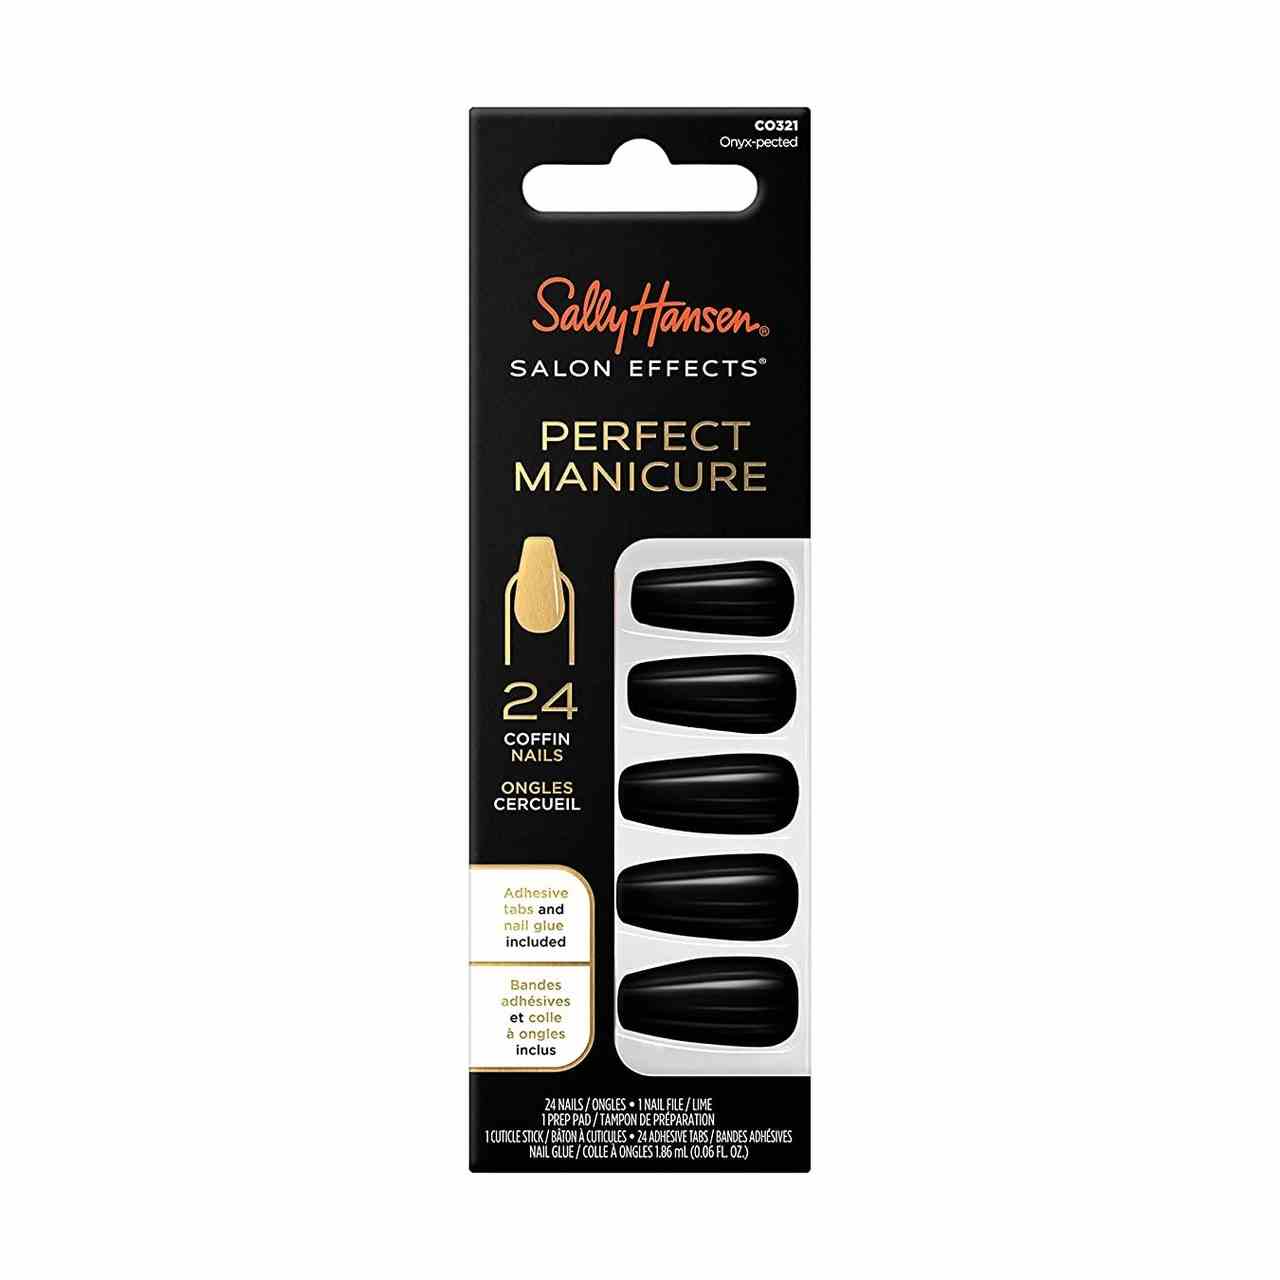 Sally Hansen Salon Effects Perfect Manicure Press-On Nails Box mit schwarzen Press-On-Nägeln auf weißem Hintergrund